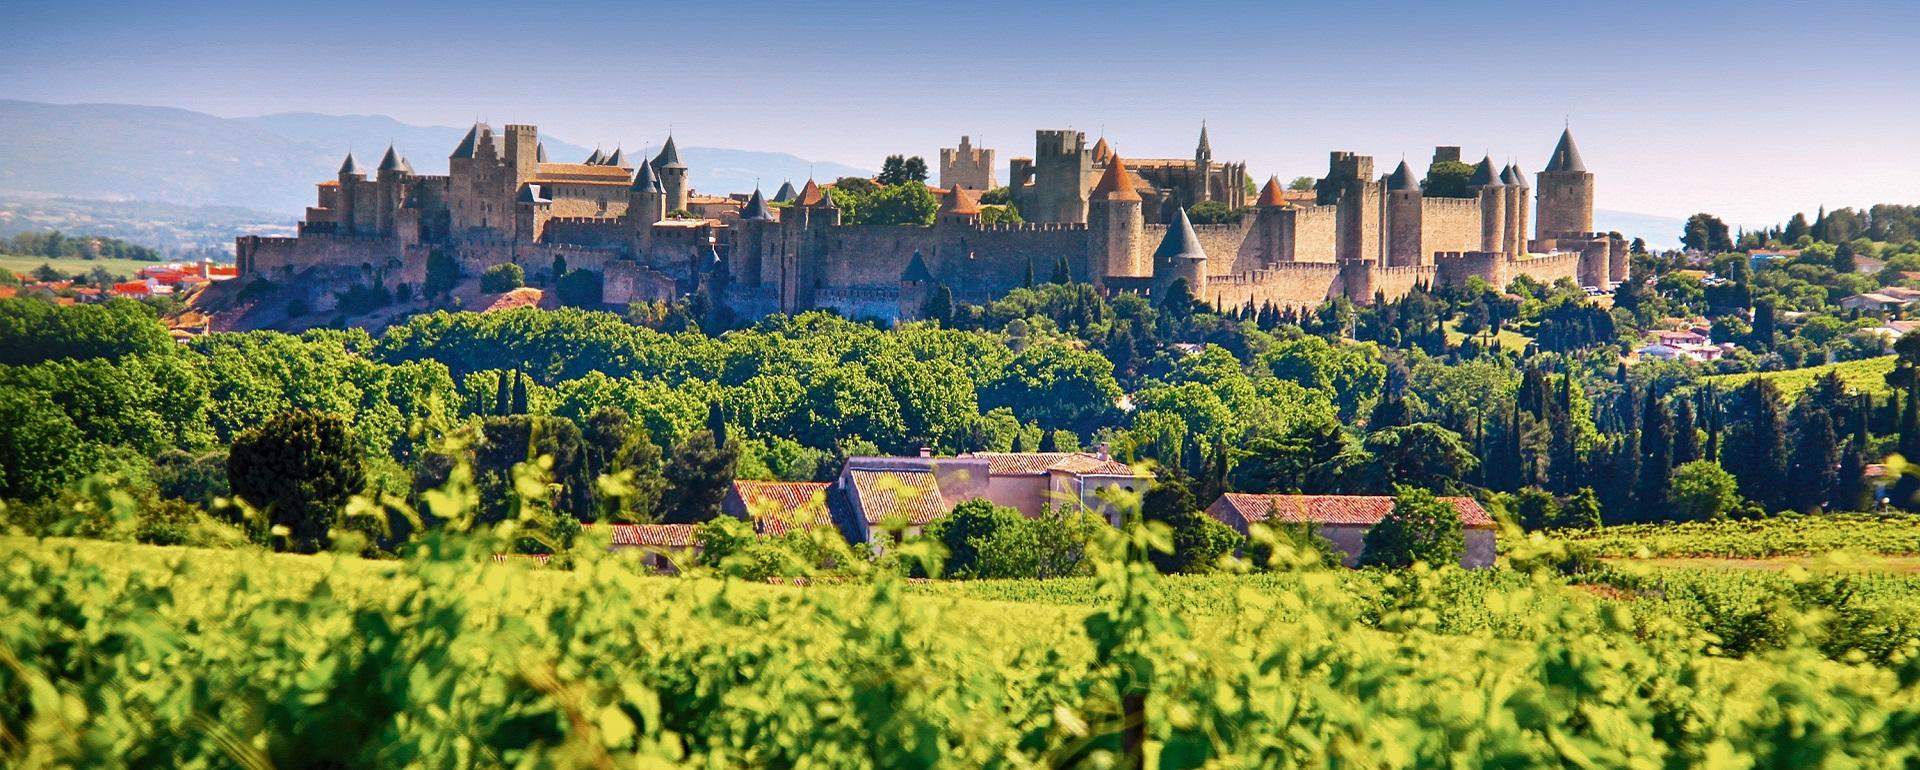 Hesje bros Industrialiseren Unesco - Middeleeuwse vestingstad Carcassonne - Visit Occitanie NL